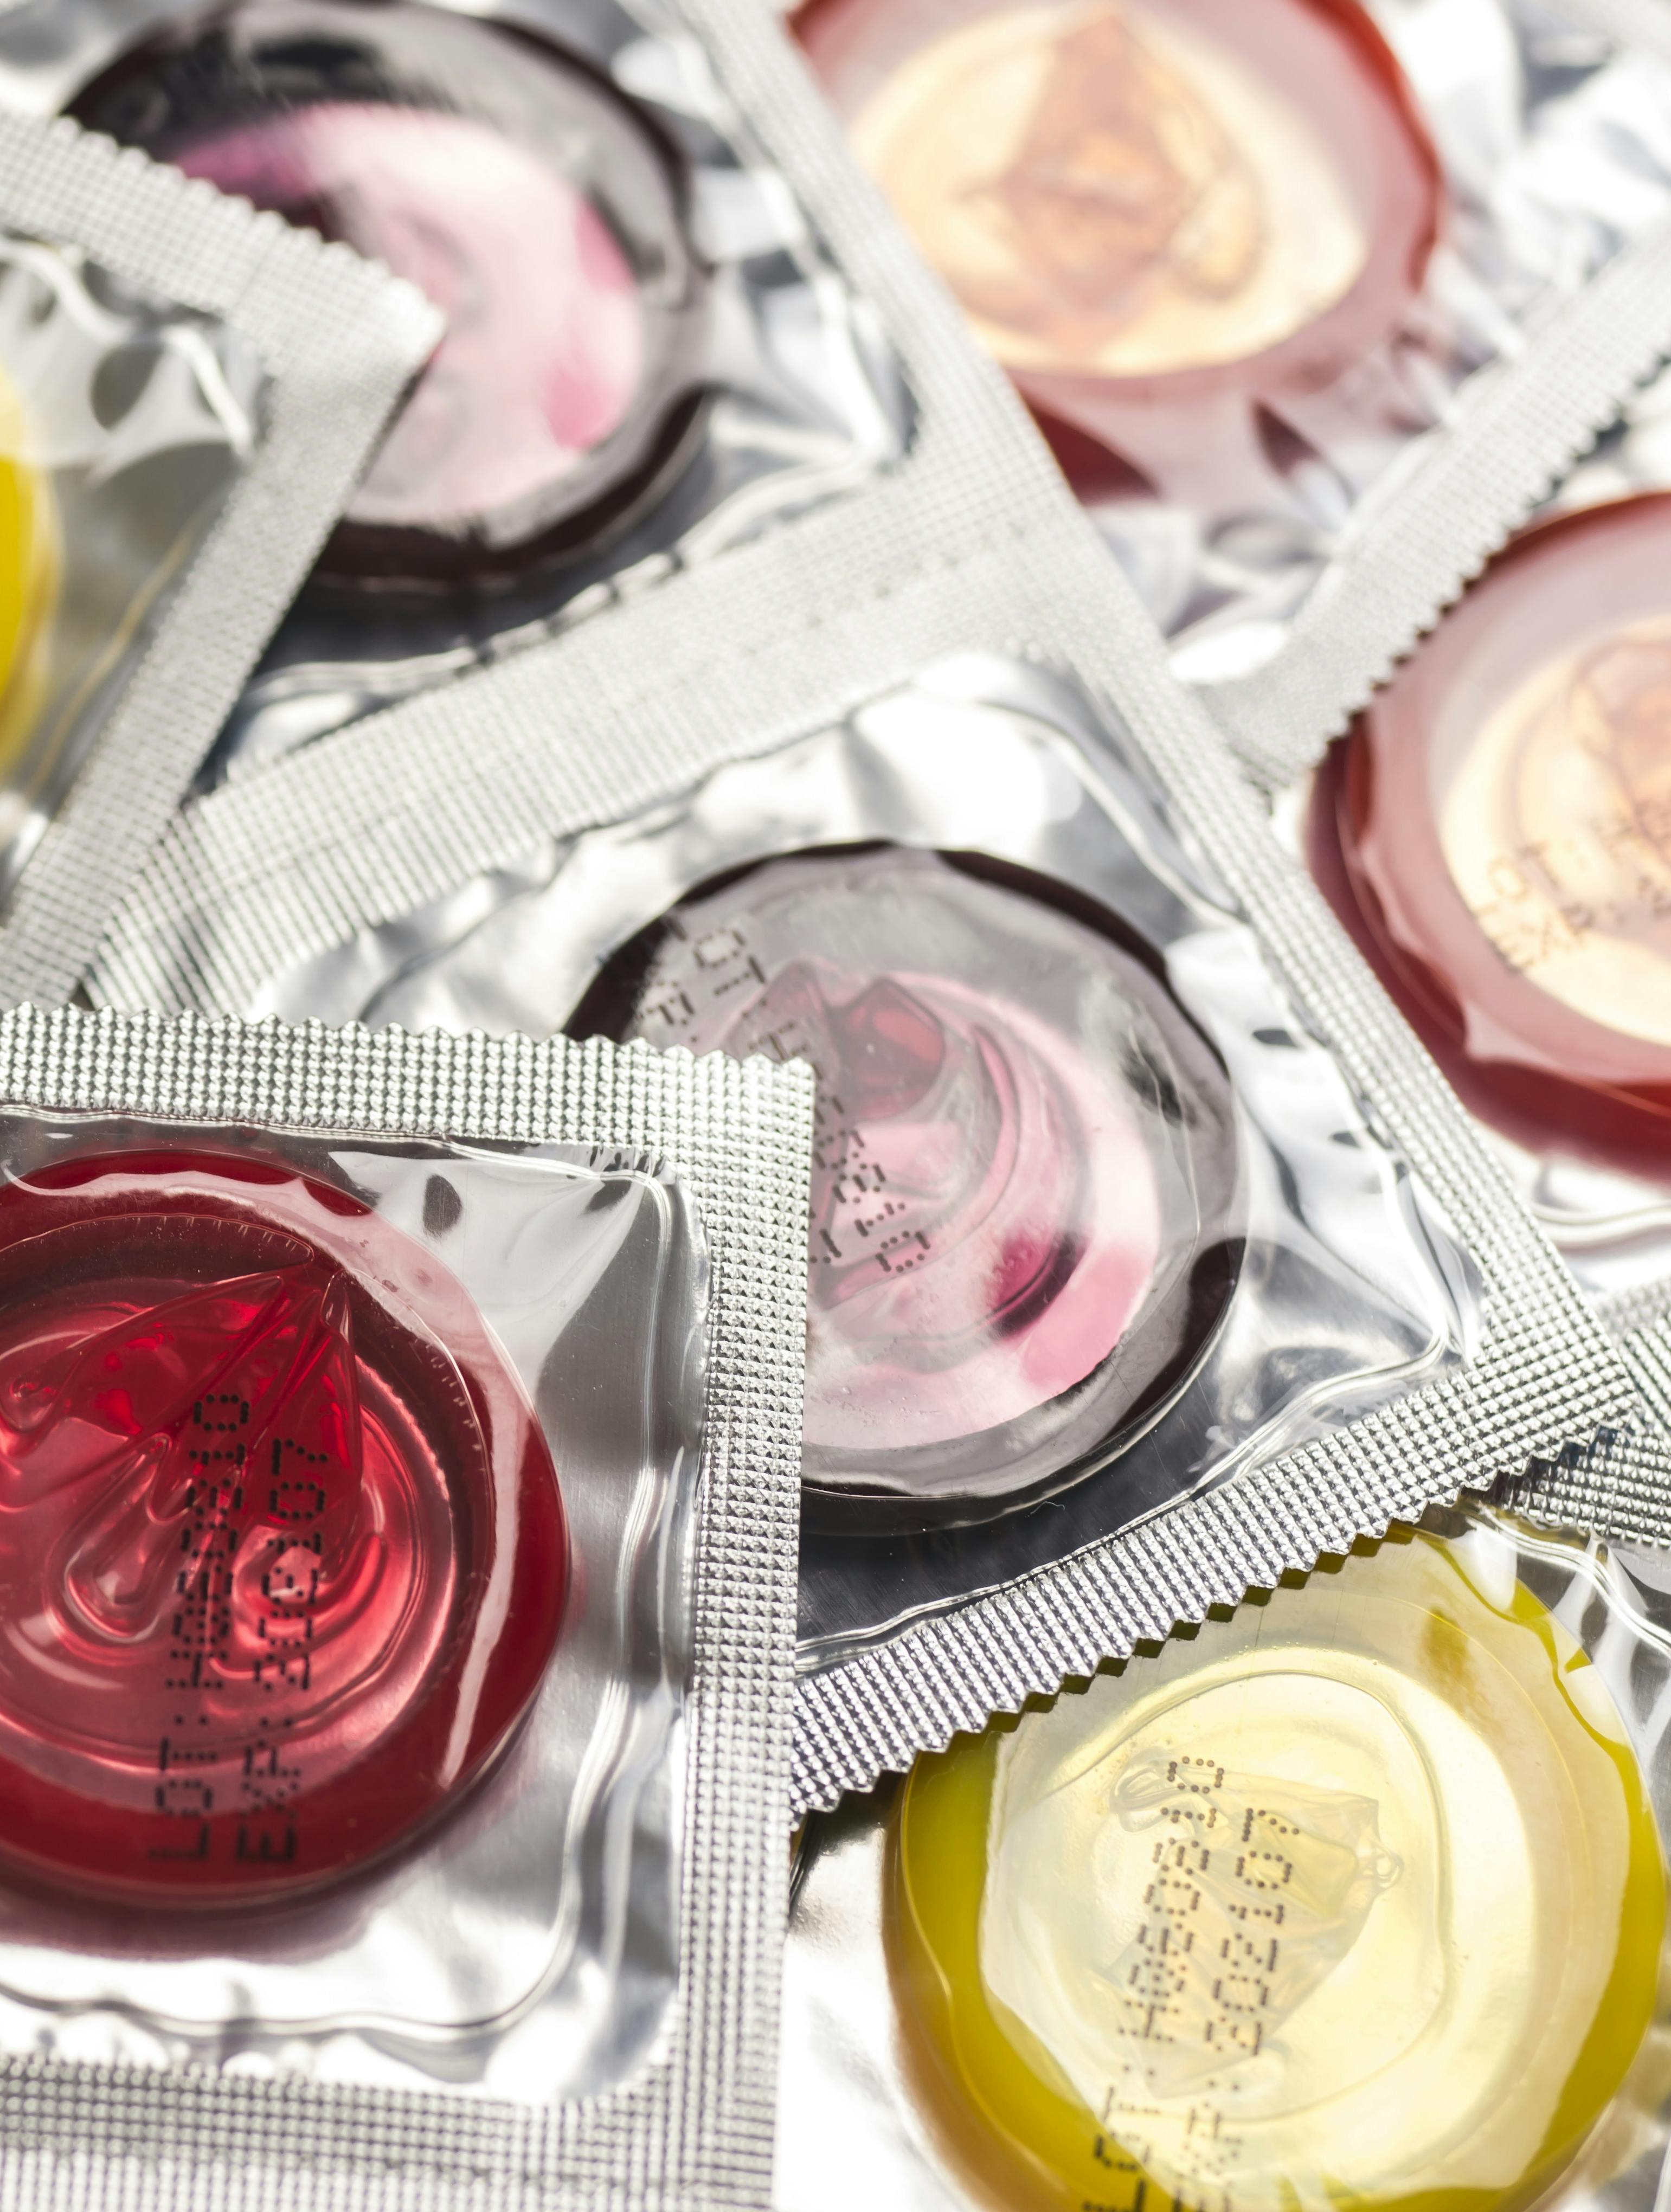 Kondomer beskytter mod graviditet og seksuelle overførte sygdomme